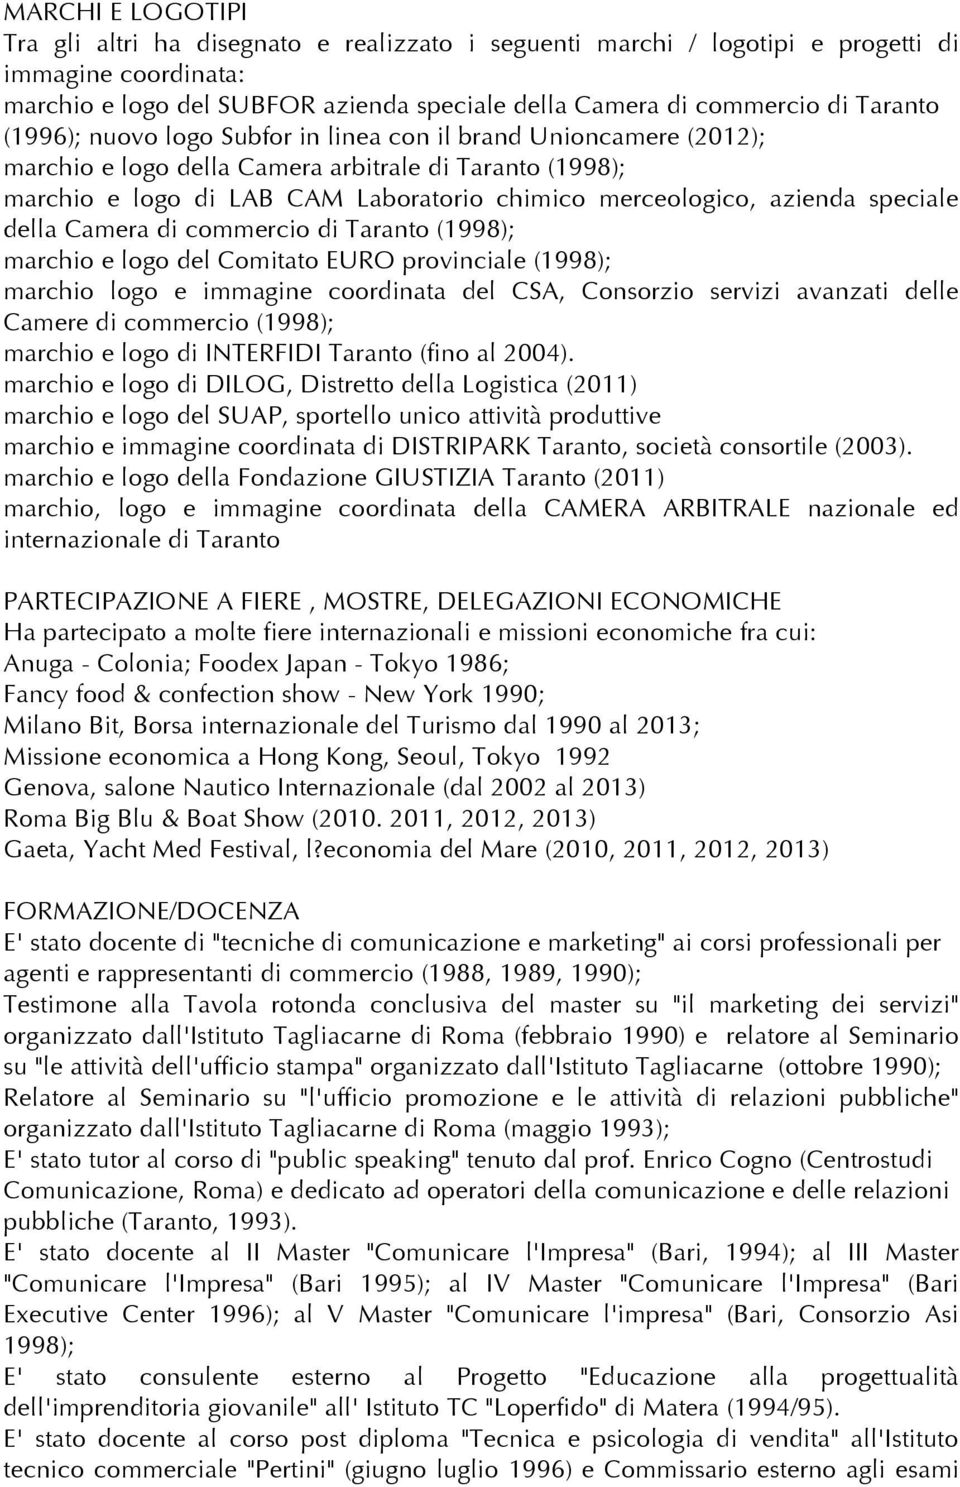 azienda speciale della Camera di commercio di Taranto (1998); marchio e logo del Comitato EURO provinciale (1998); marchio logo e immagine coordinata del CSA, Consorzio servizi avanzati delle Camere